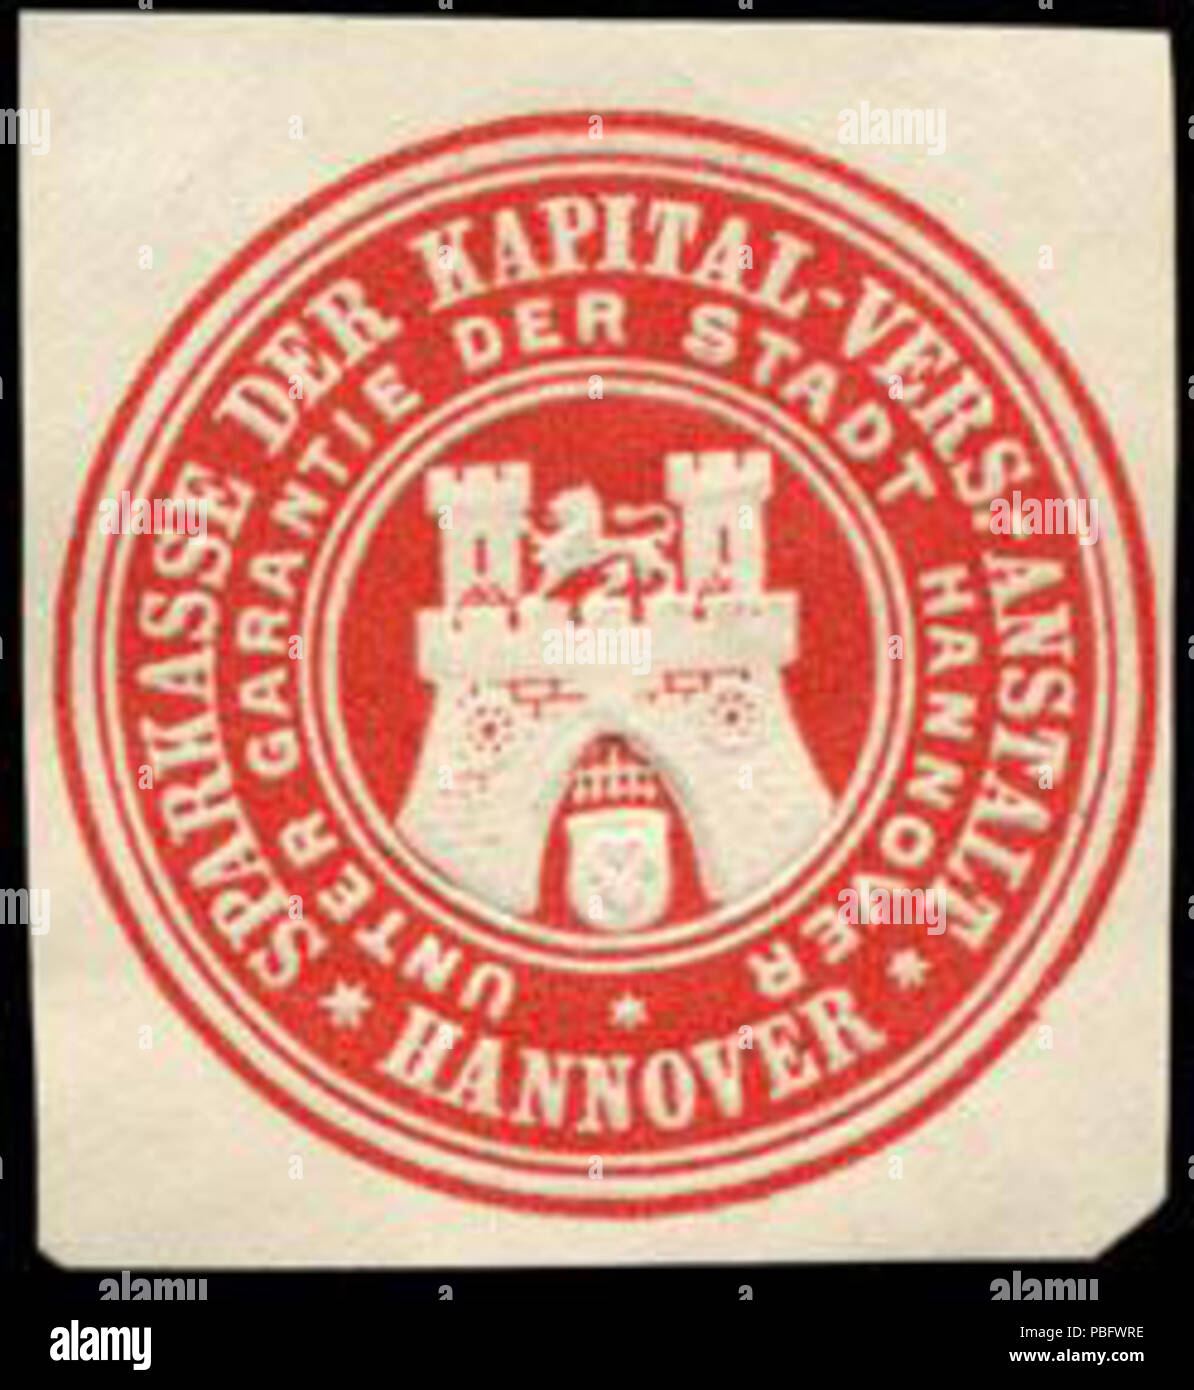 1513 Siegelmarke Sparkasse der Kapital - Versicherungs - Anstalt - Hannover - Unter Garantie der Stadt Hannover W0227776 Stock Photo